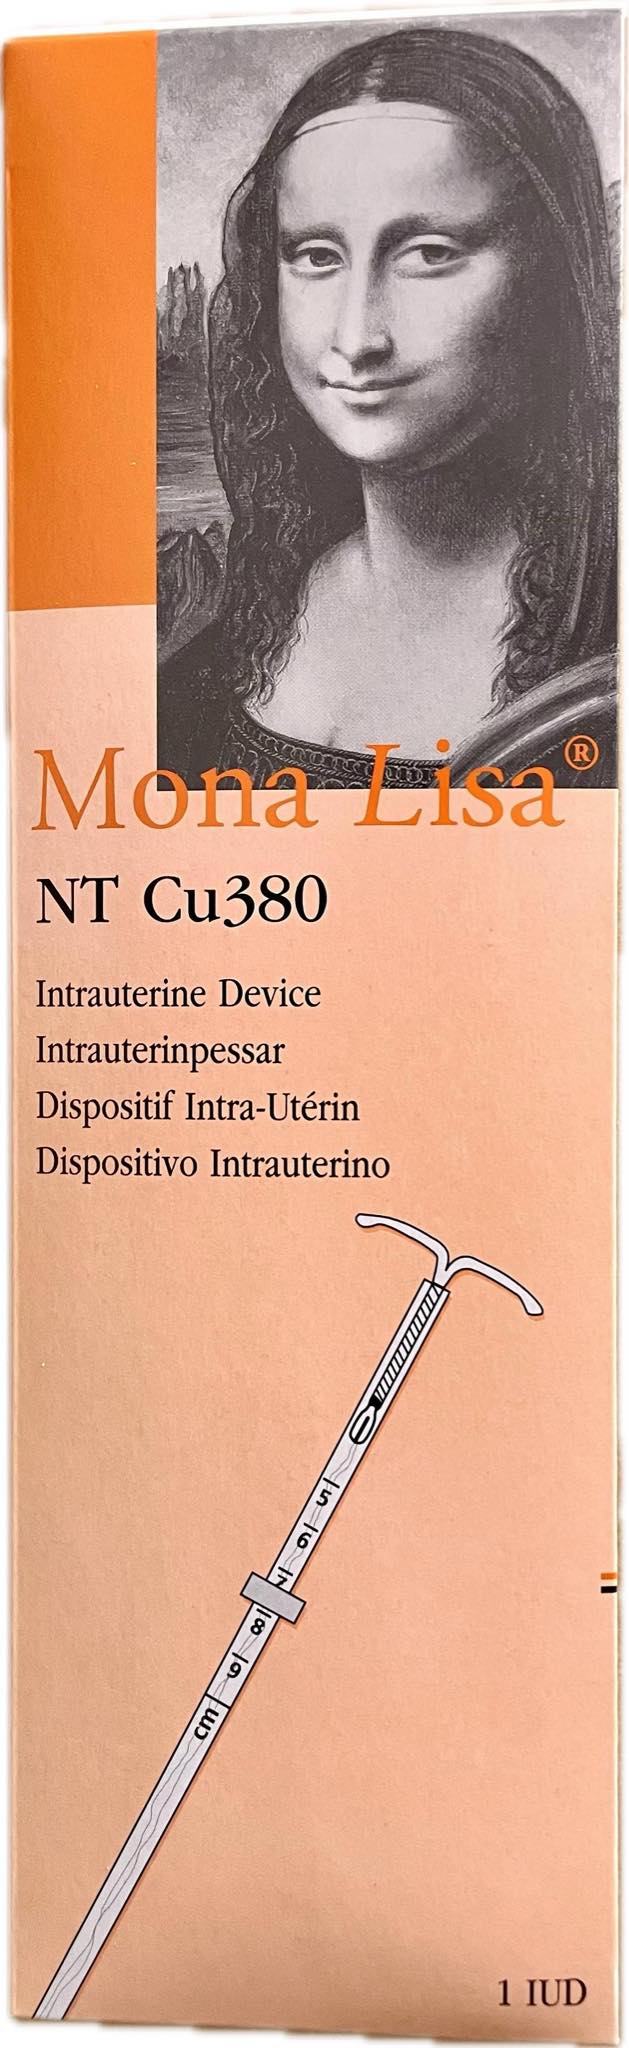 Wkładka wewnątrzmaciczna Mona Lisa NT Cu380  z miedzą NORMAL